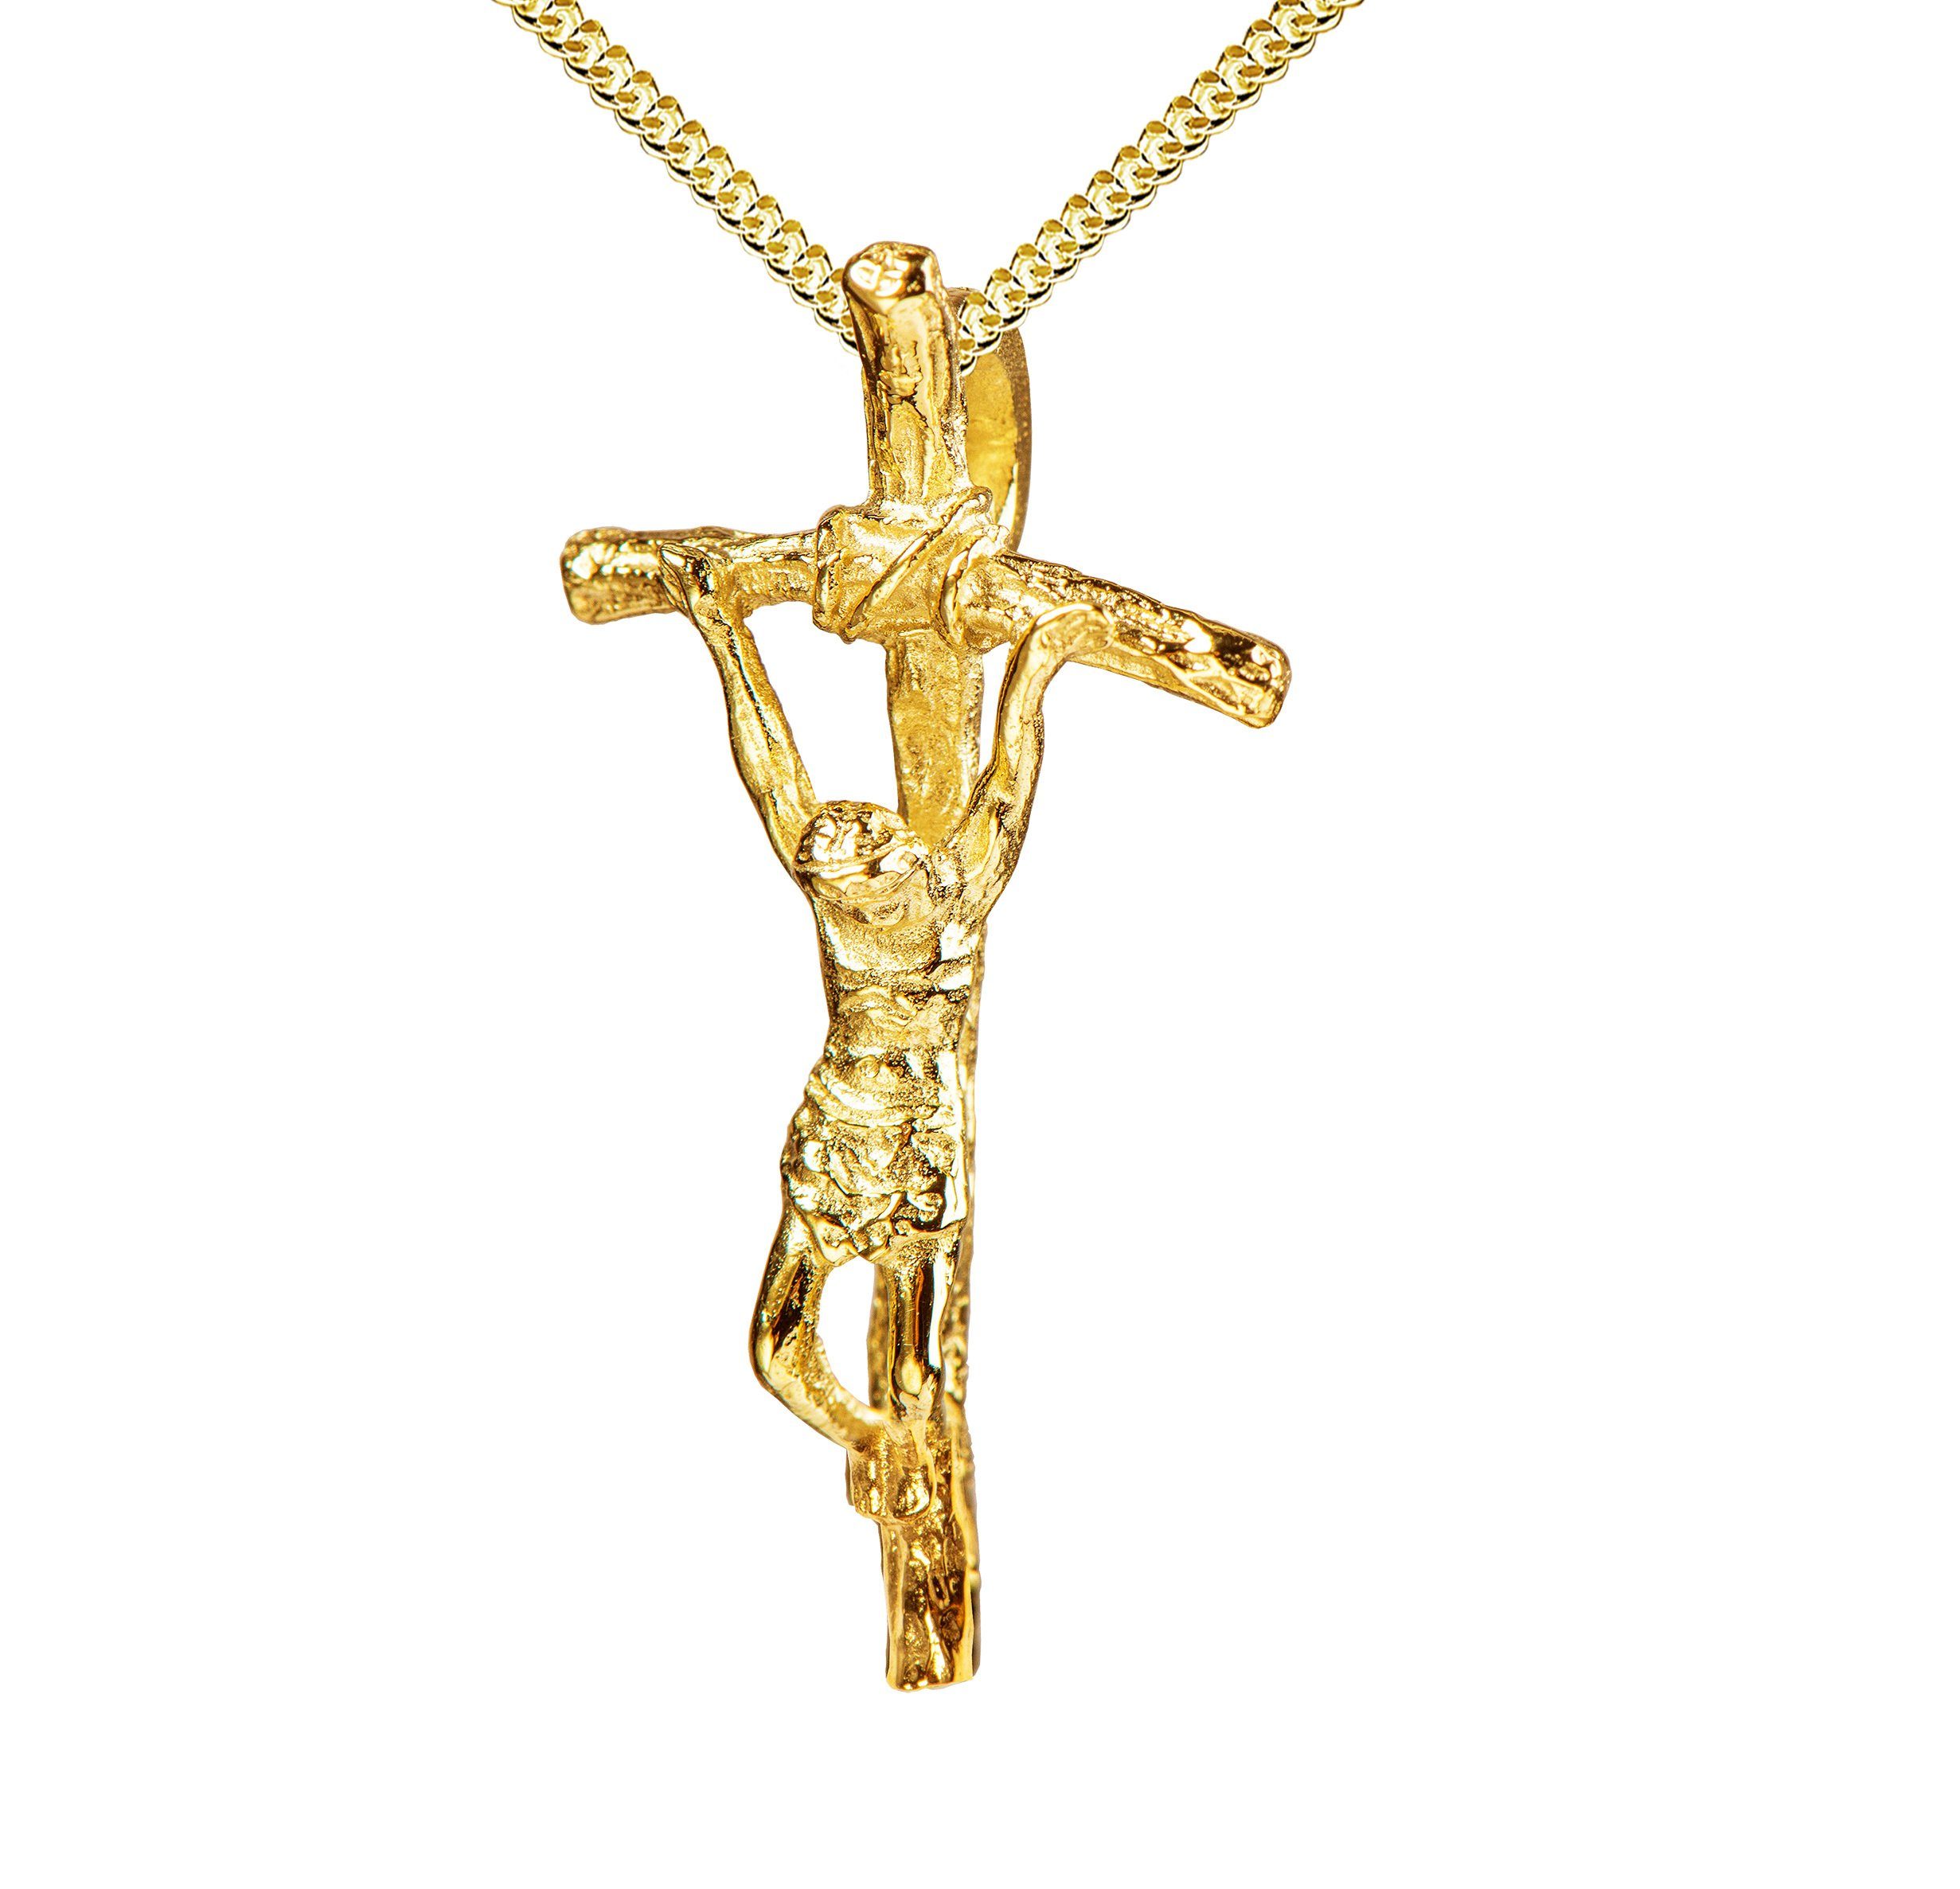 JEVELION Kreuzkette Kruzifix Anhänger 750 Gold - Made in Germany (Goldkreuz, für Damen und Herren), Mit Kette vergoldet- Länge wählbar 36 - 70 cm oder ohne Kette.